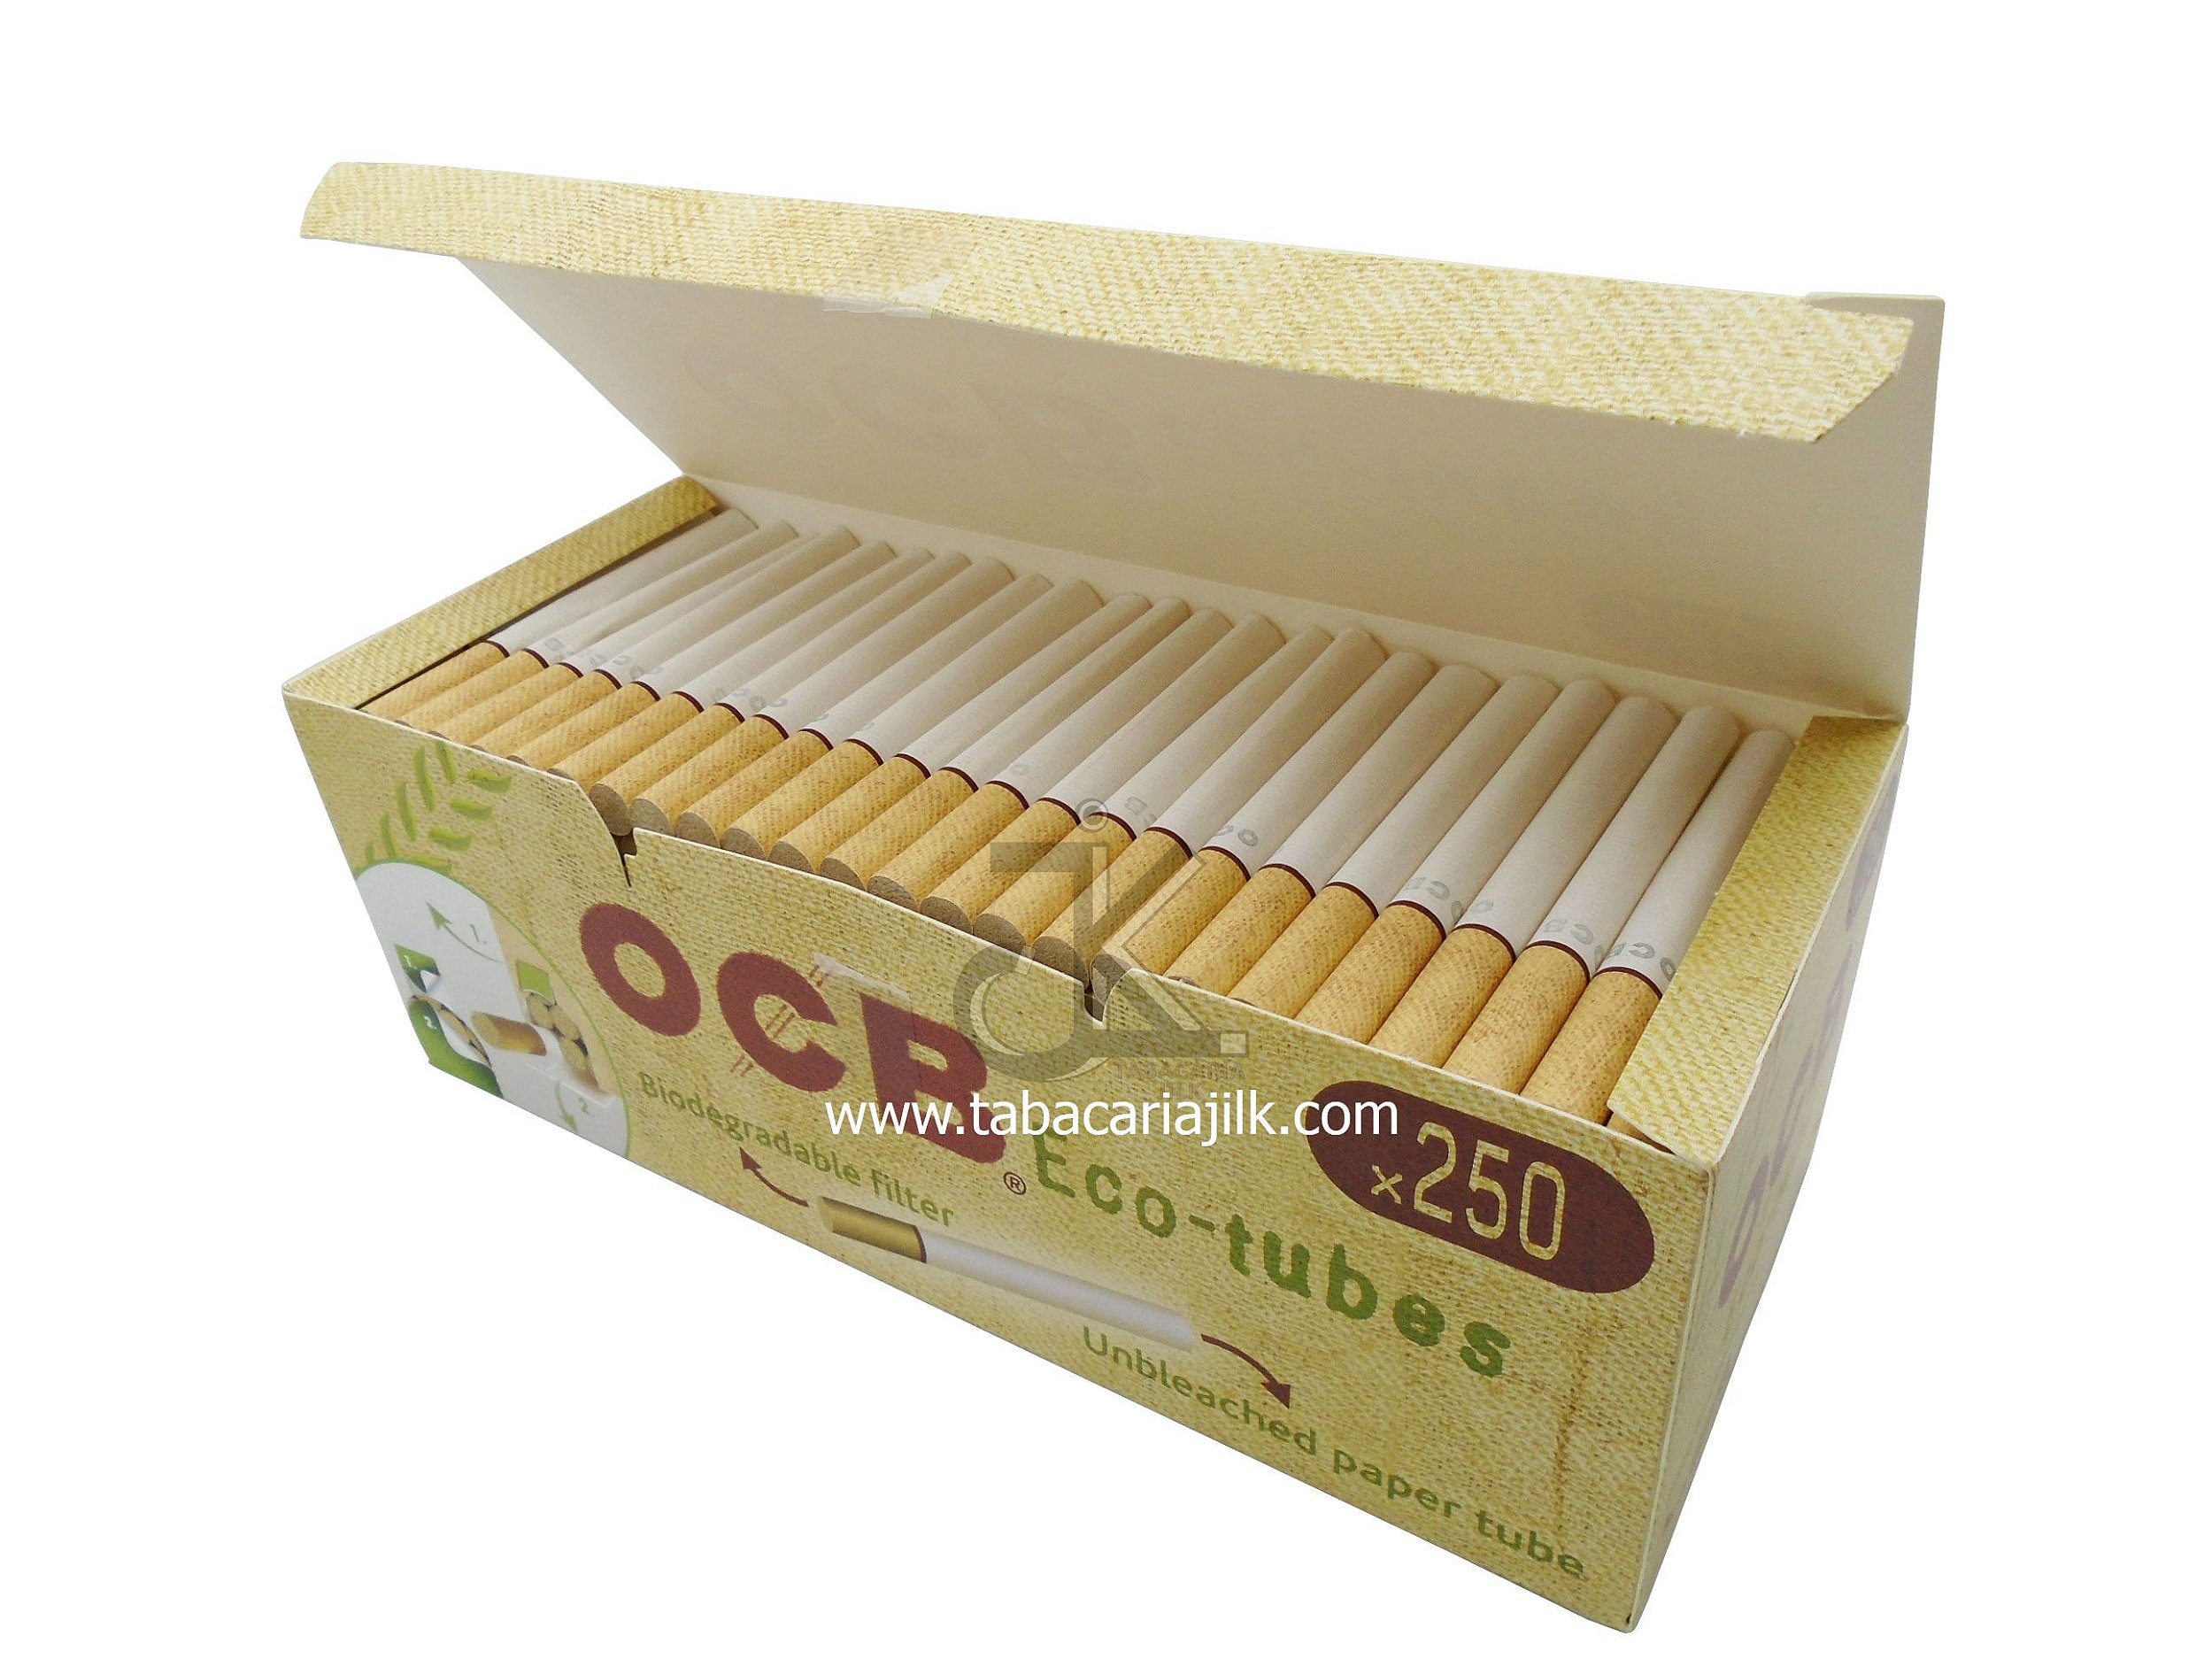 Um cigarro OCB tubo, caixa 250, compatível para todos os tubeuses